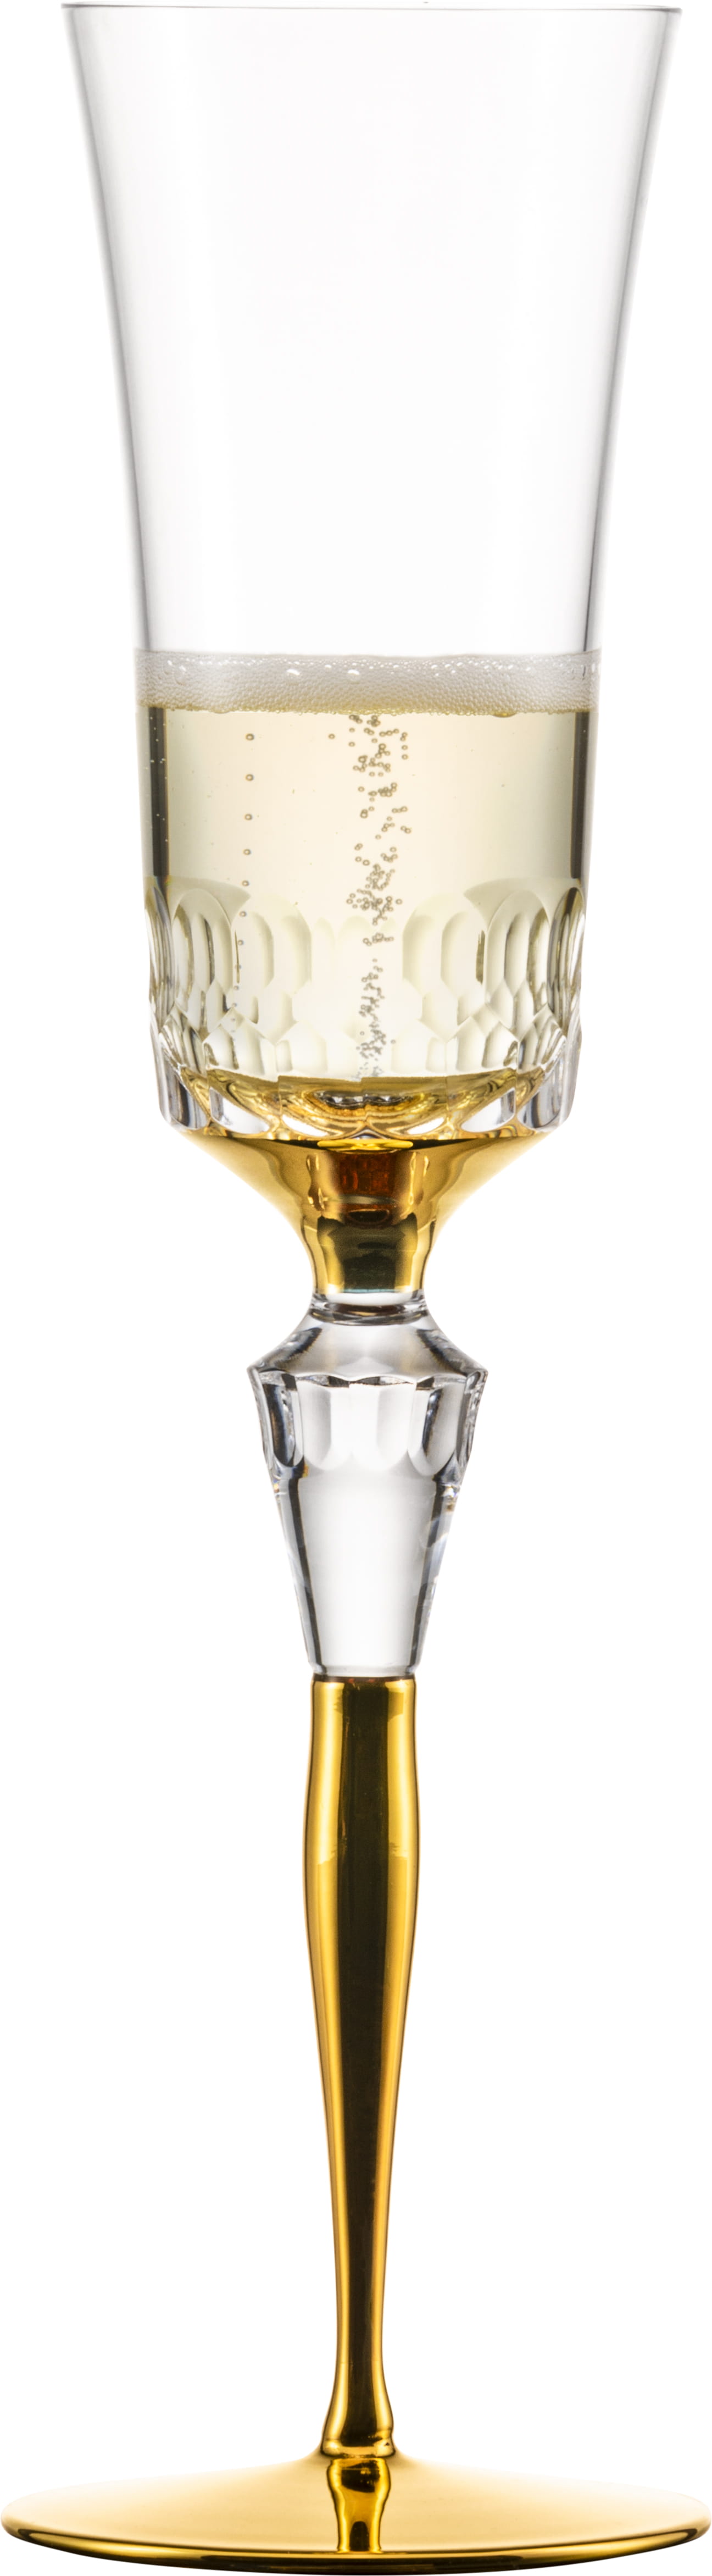 Eisch Glas Champagner Exklusiv 2 Champagnergläser 596/74 Gold im Geschenkkarton